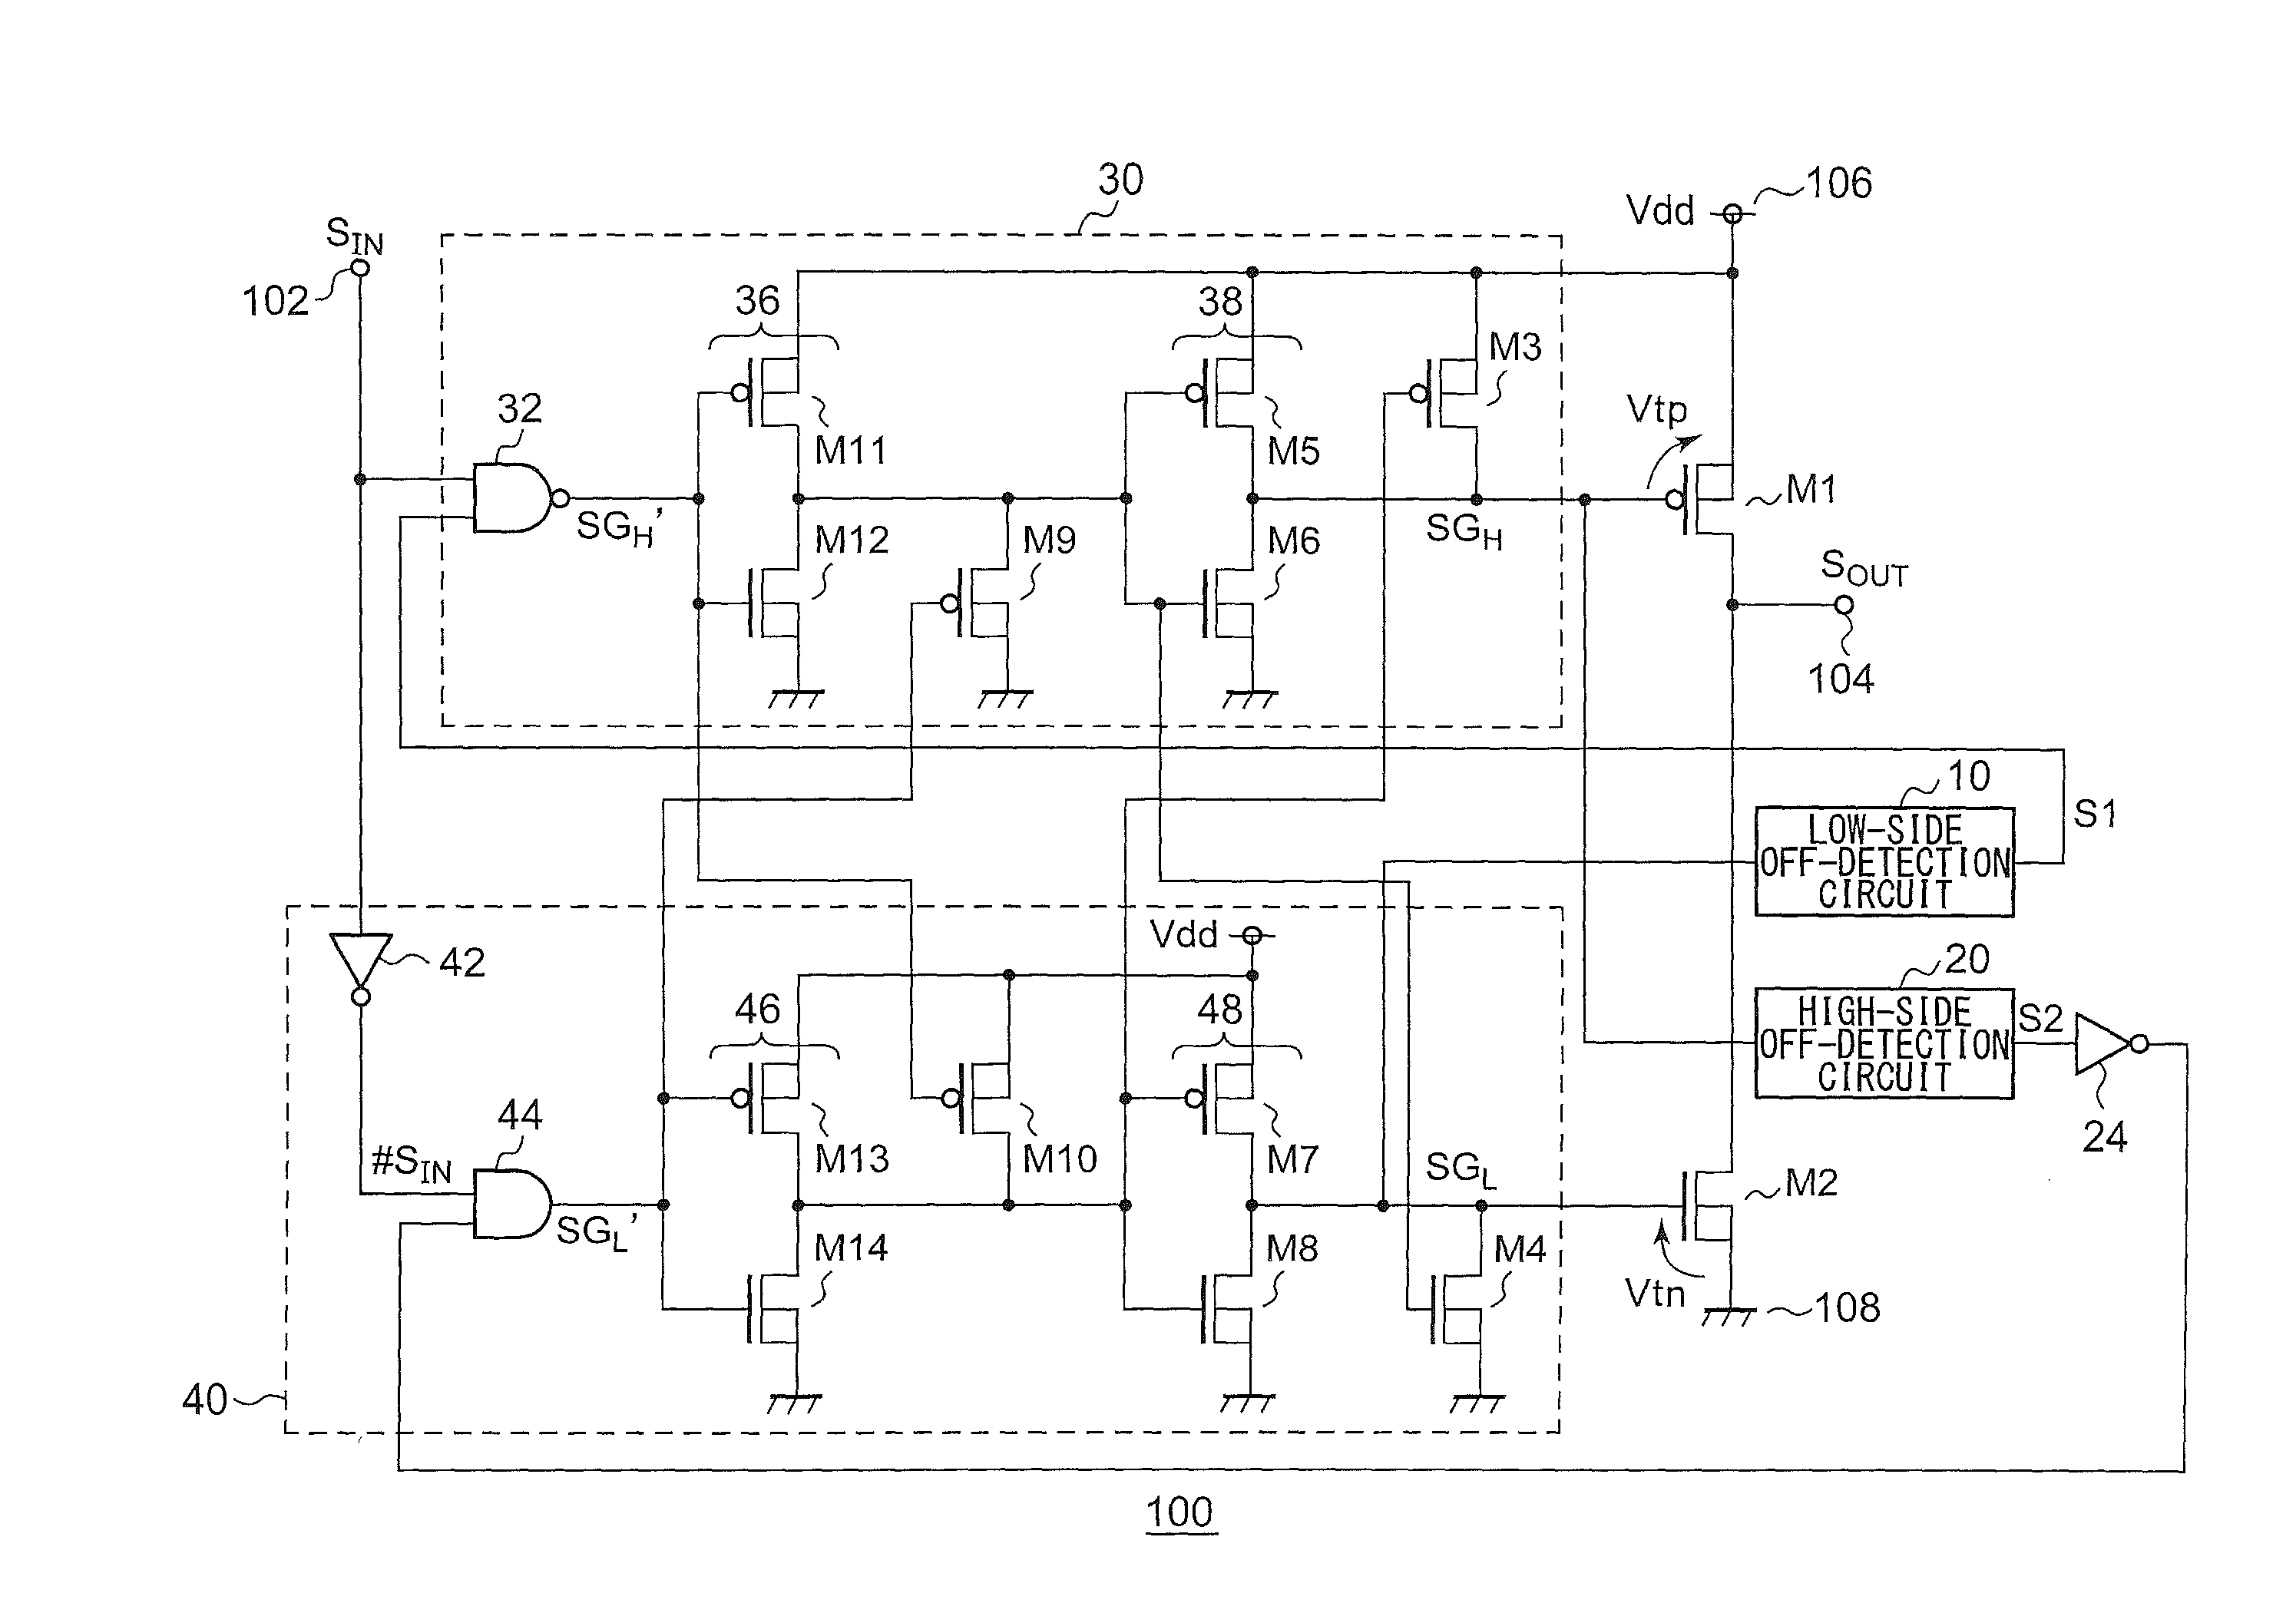 Output circuit